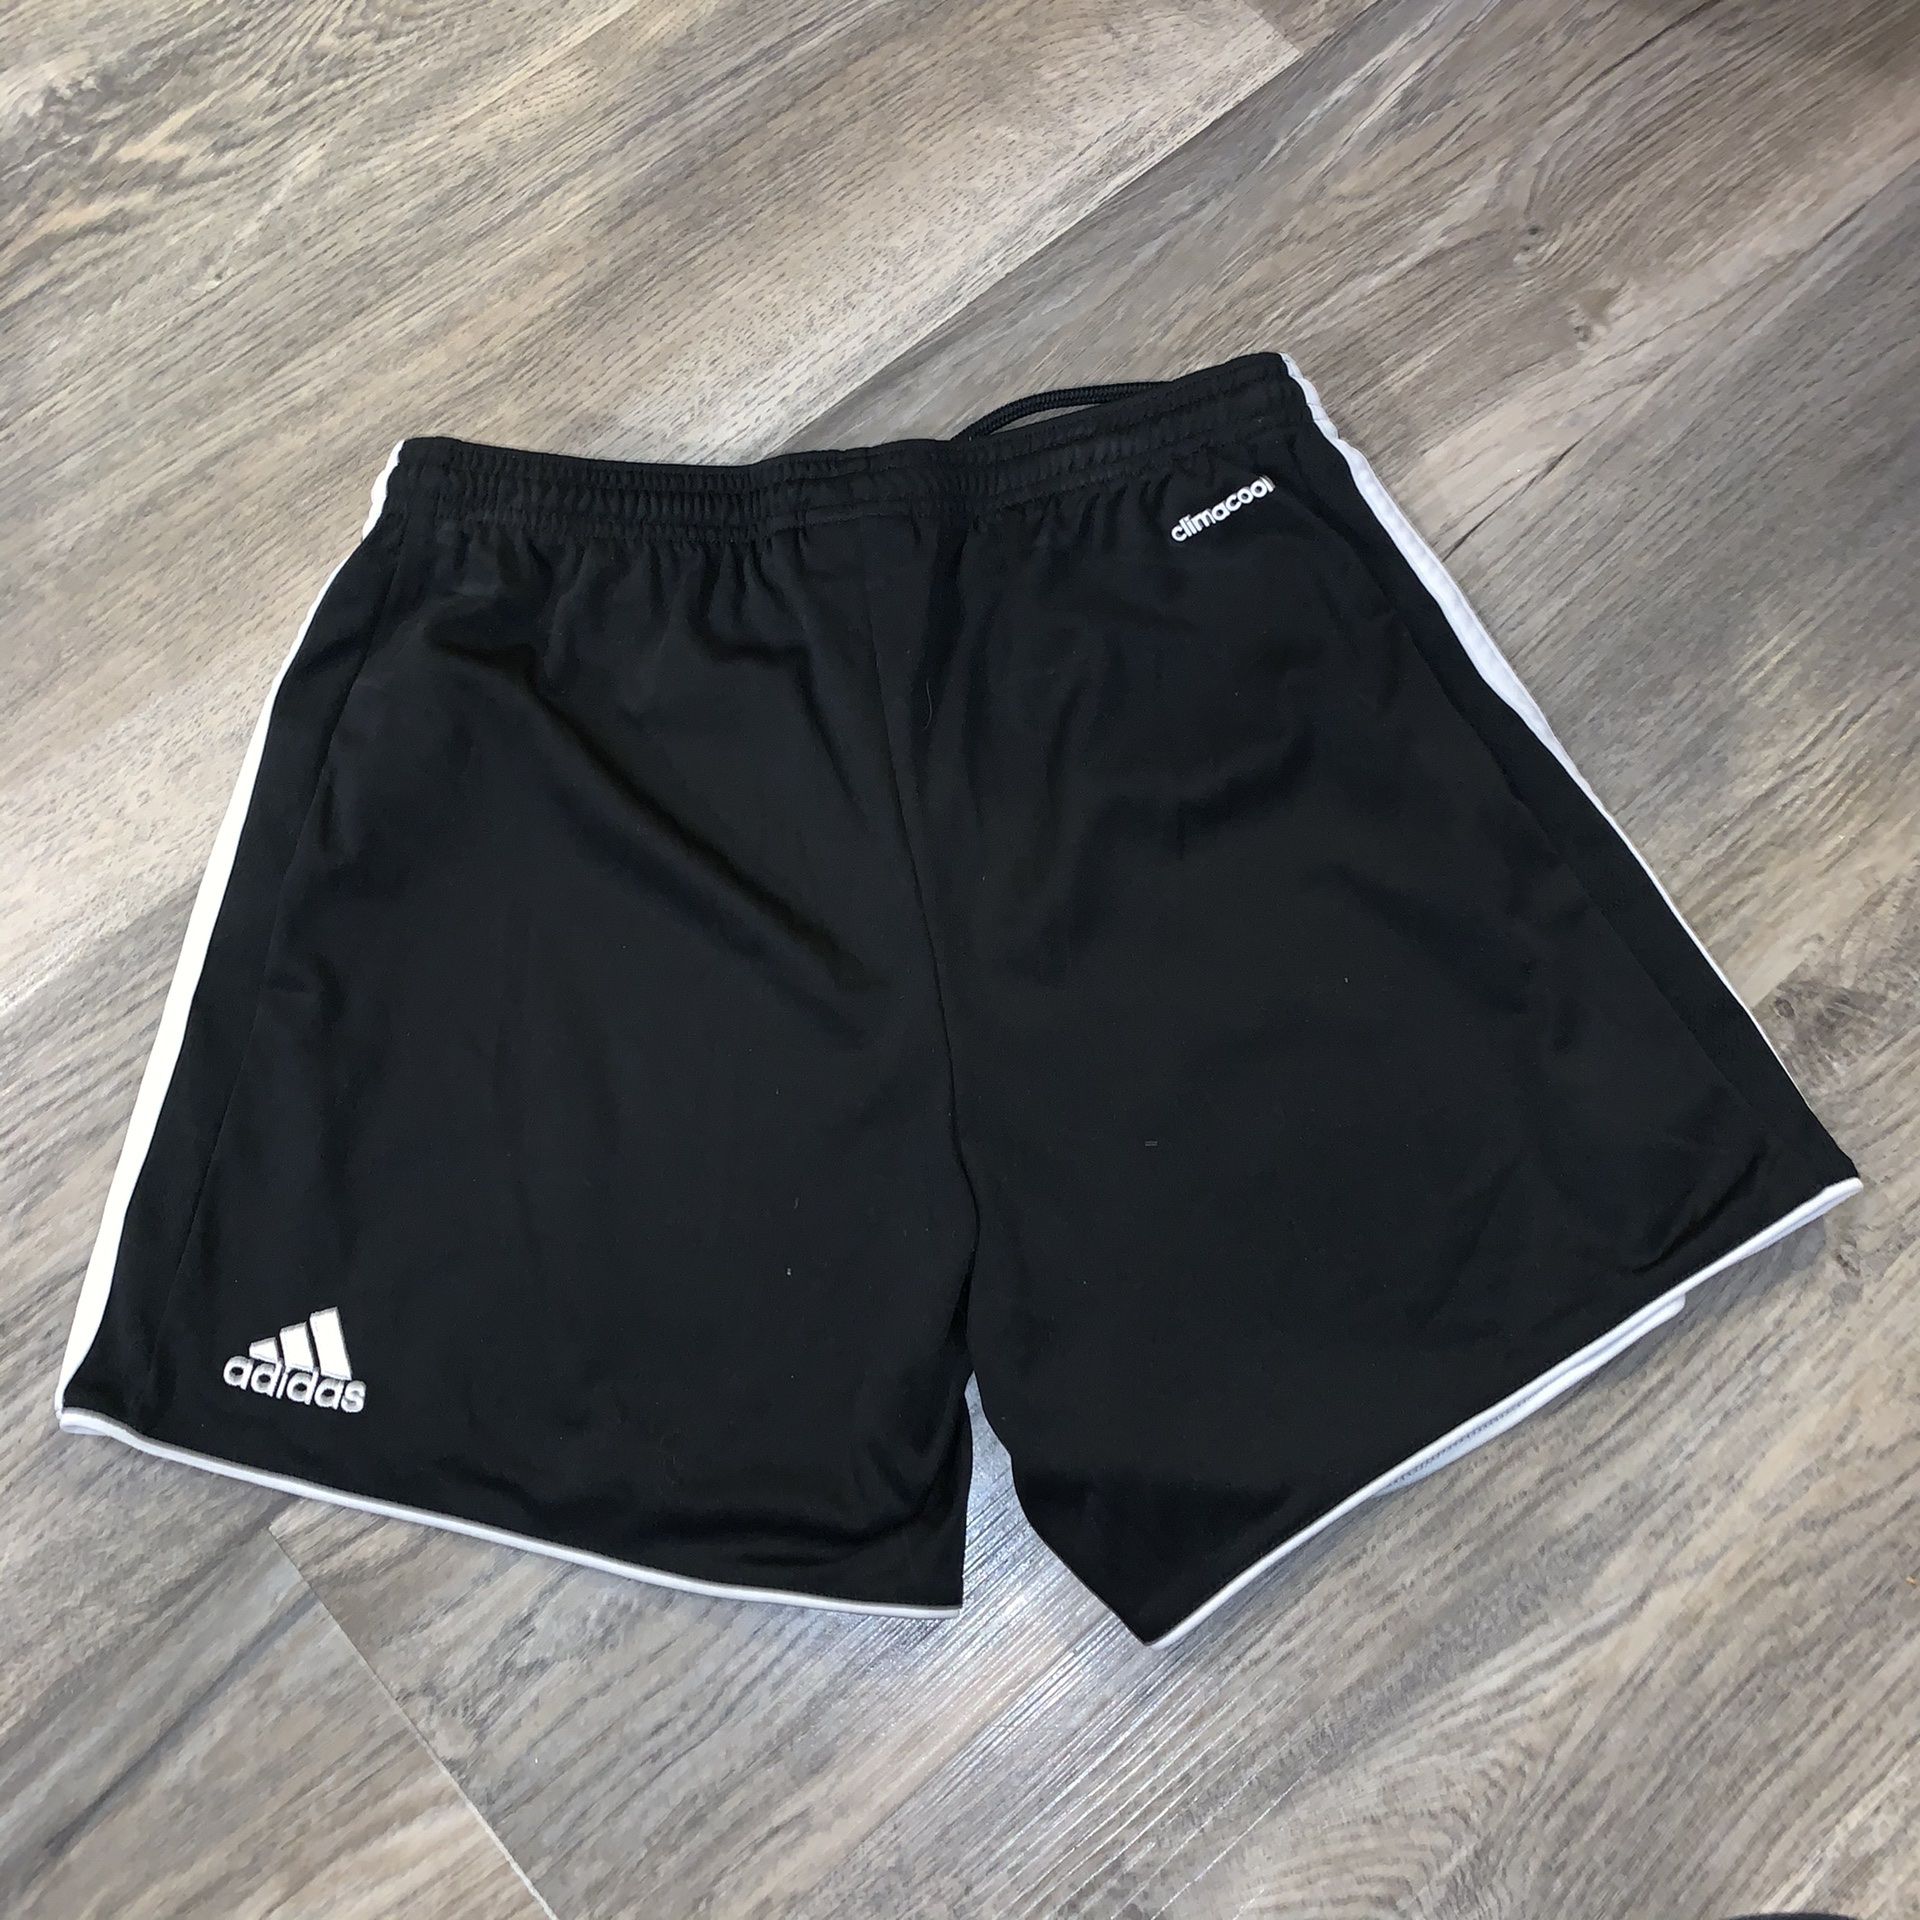 Adidas Small Shorts